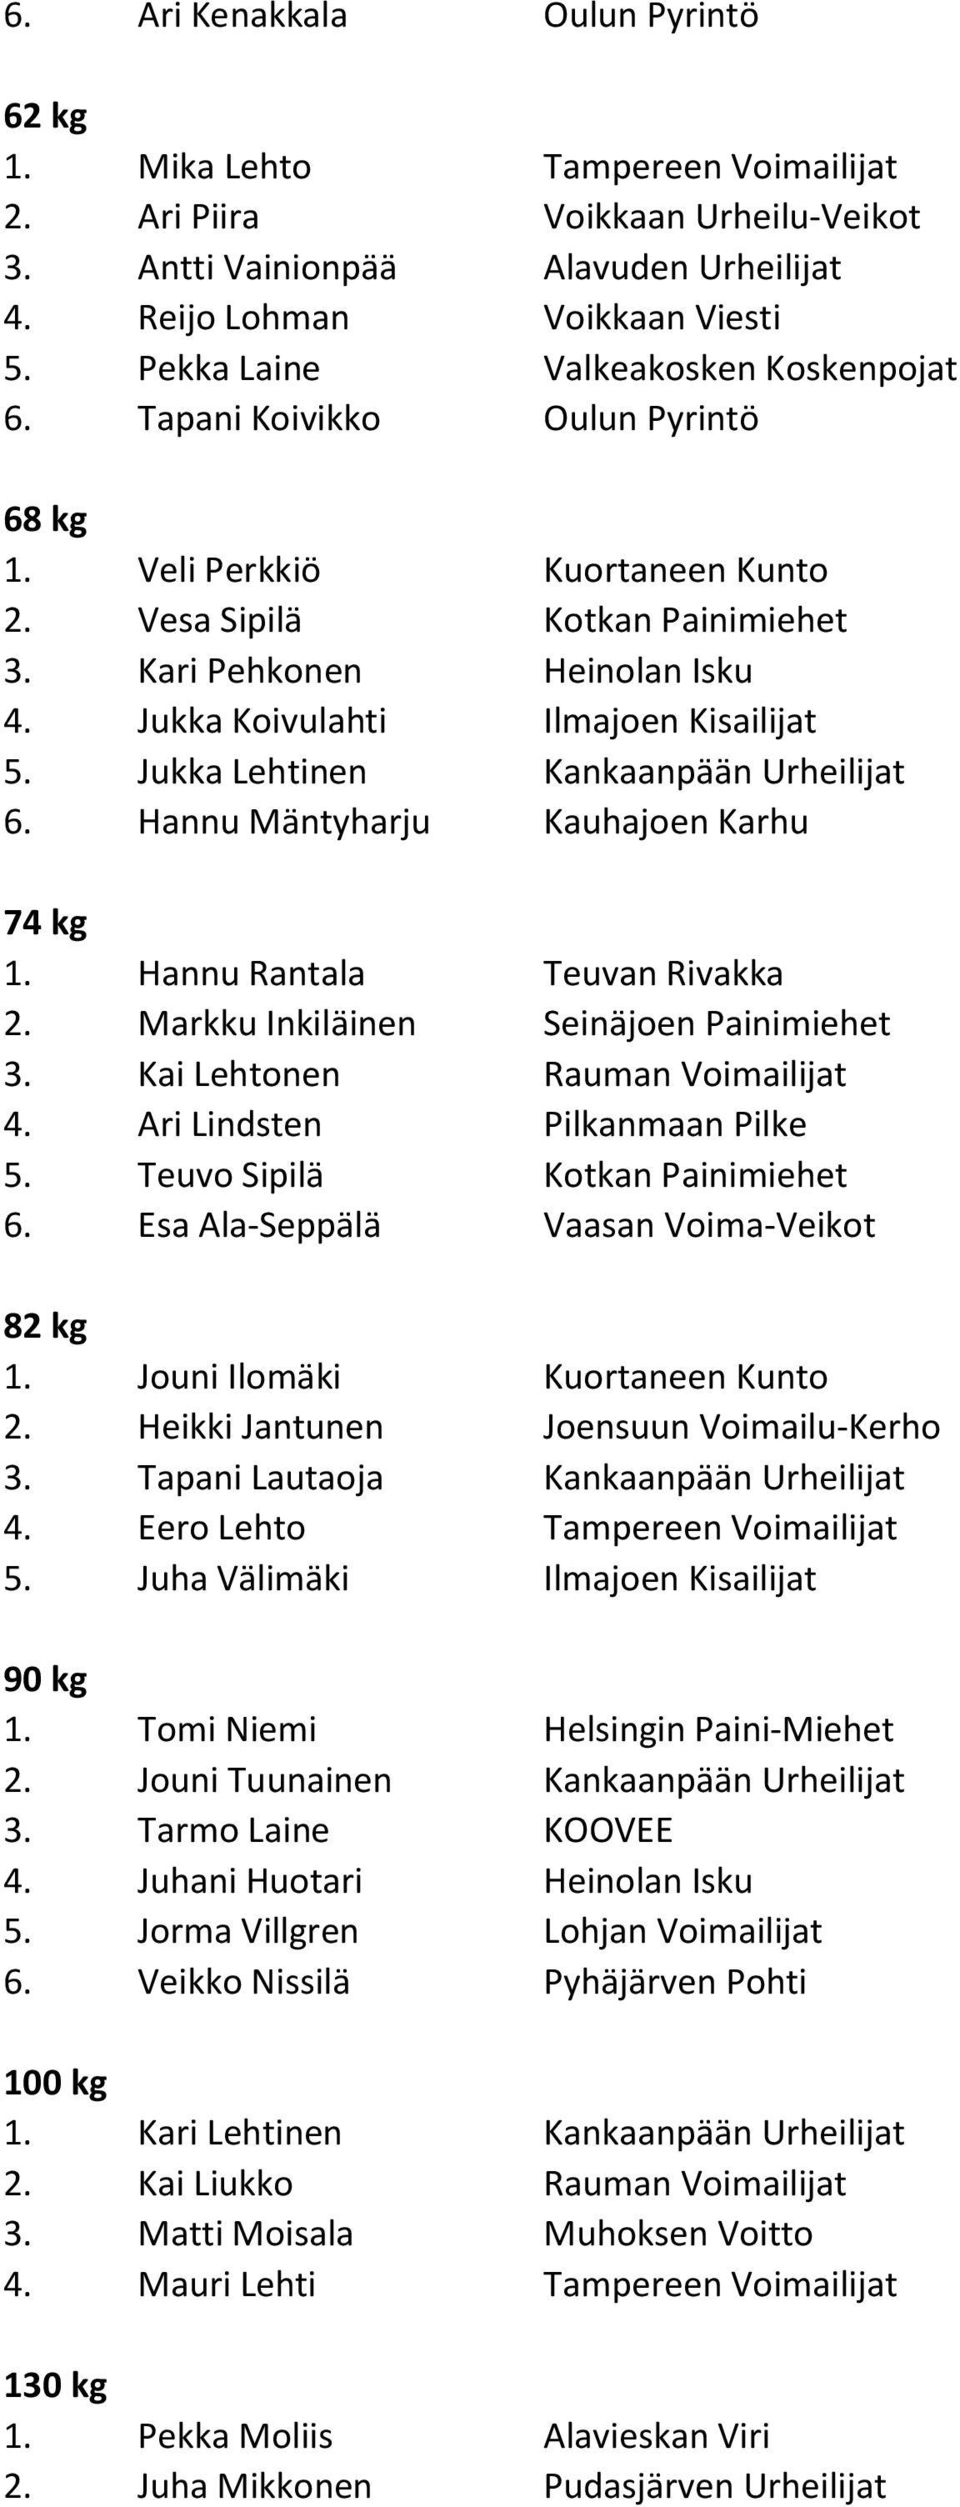 Jukka Koivulahti Ilmajoen Kisailijat 5. Jukka Lehtinen Kankaanpään Urheilijat 6. Hannu Mäntyharju Kauhajoen Karhu 1. Hannu Rantala Teuvan Rivakka 2. Markku Inkiläinen Seinäjoen Painimiehet 3.